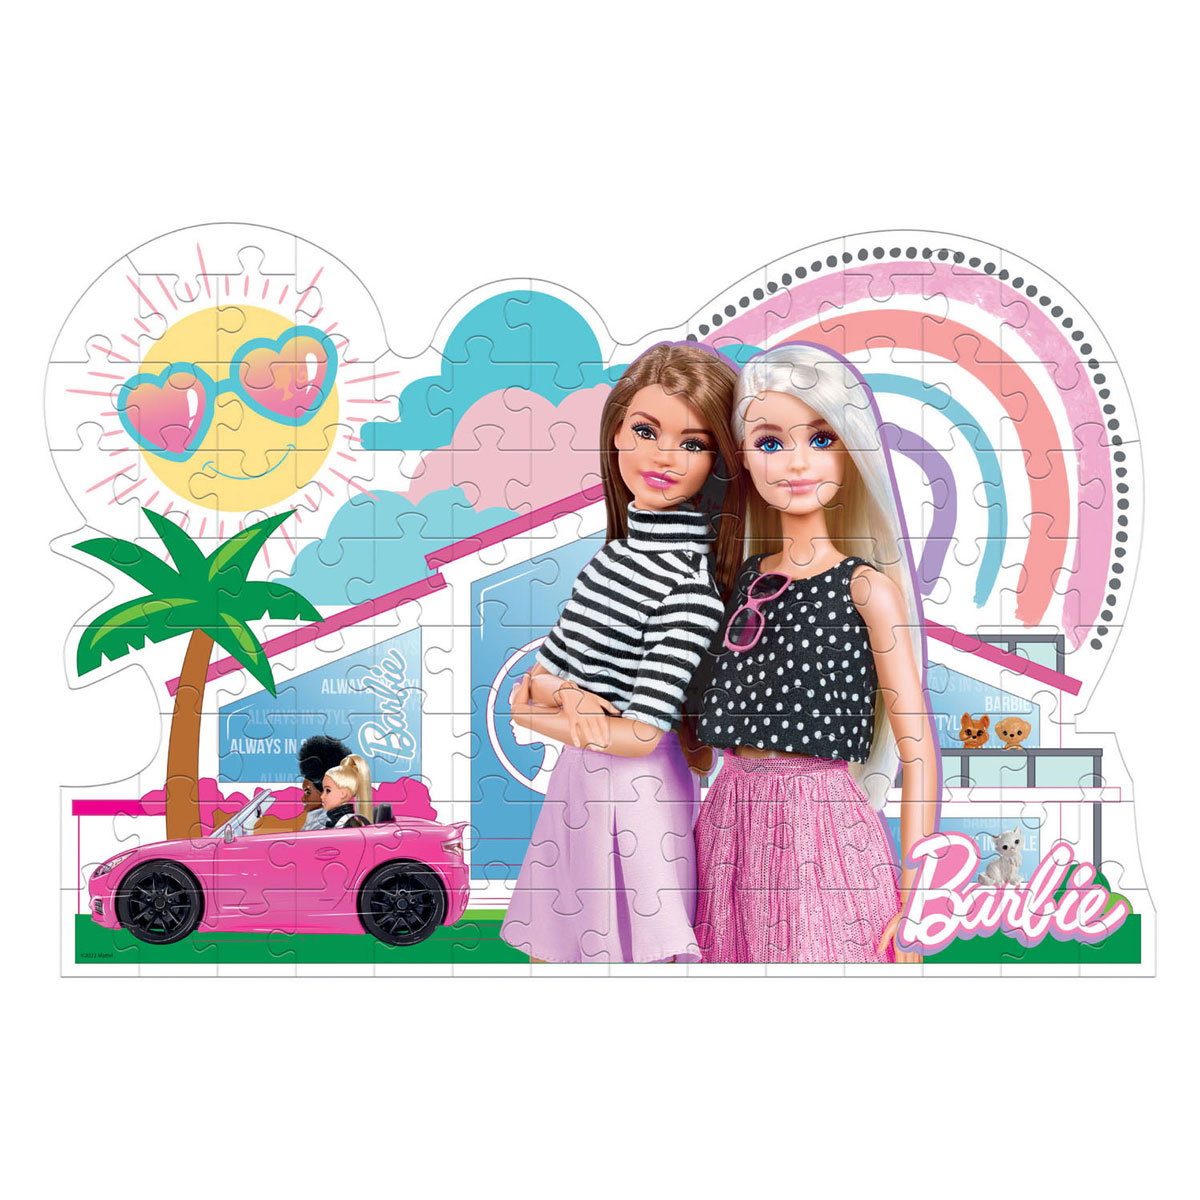 Clementoni Puzzle Super Color – Barbie Pink Car, 104 Teile.